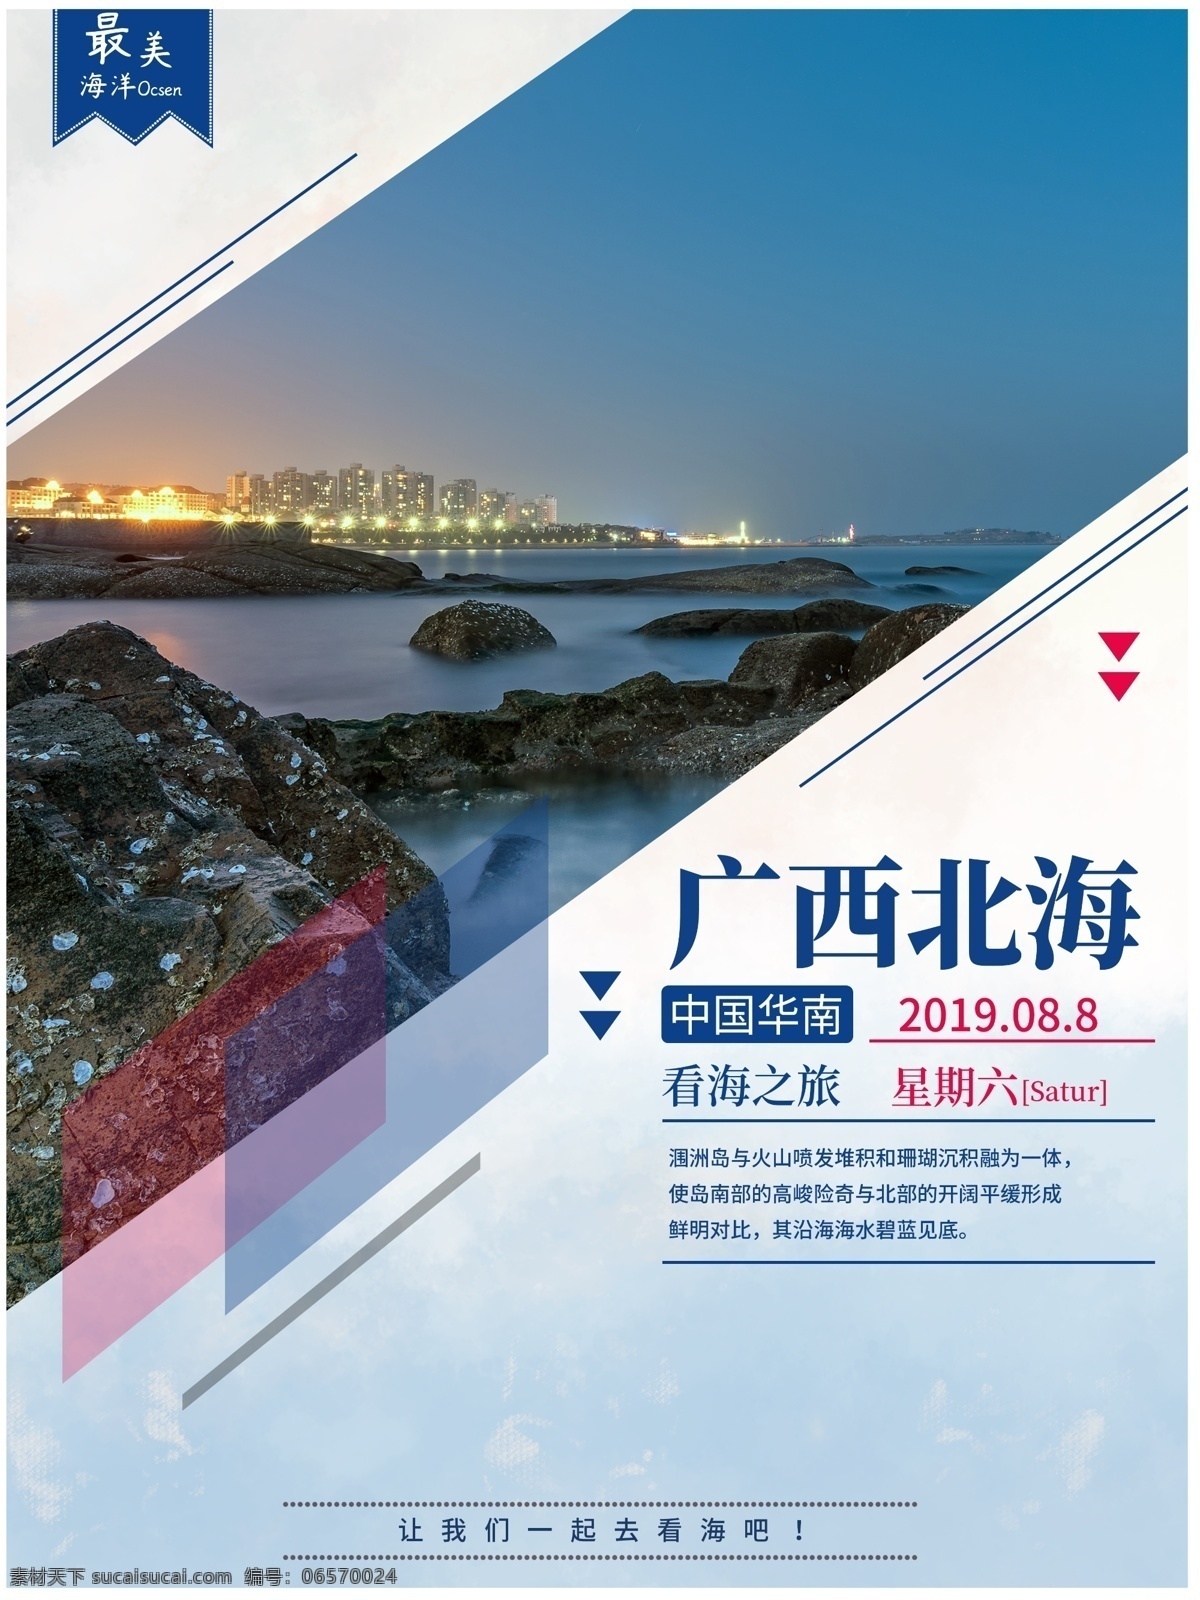 广西 北海 旅游 宣传海报 广西旅游 北海旅游 大海 美景 海报素材